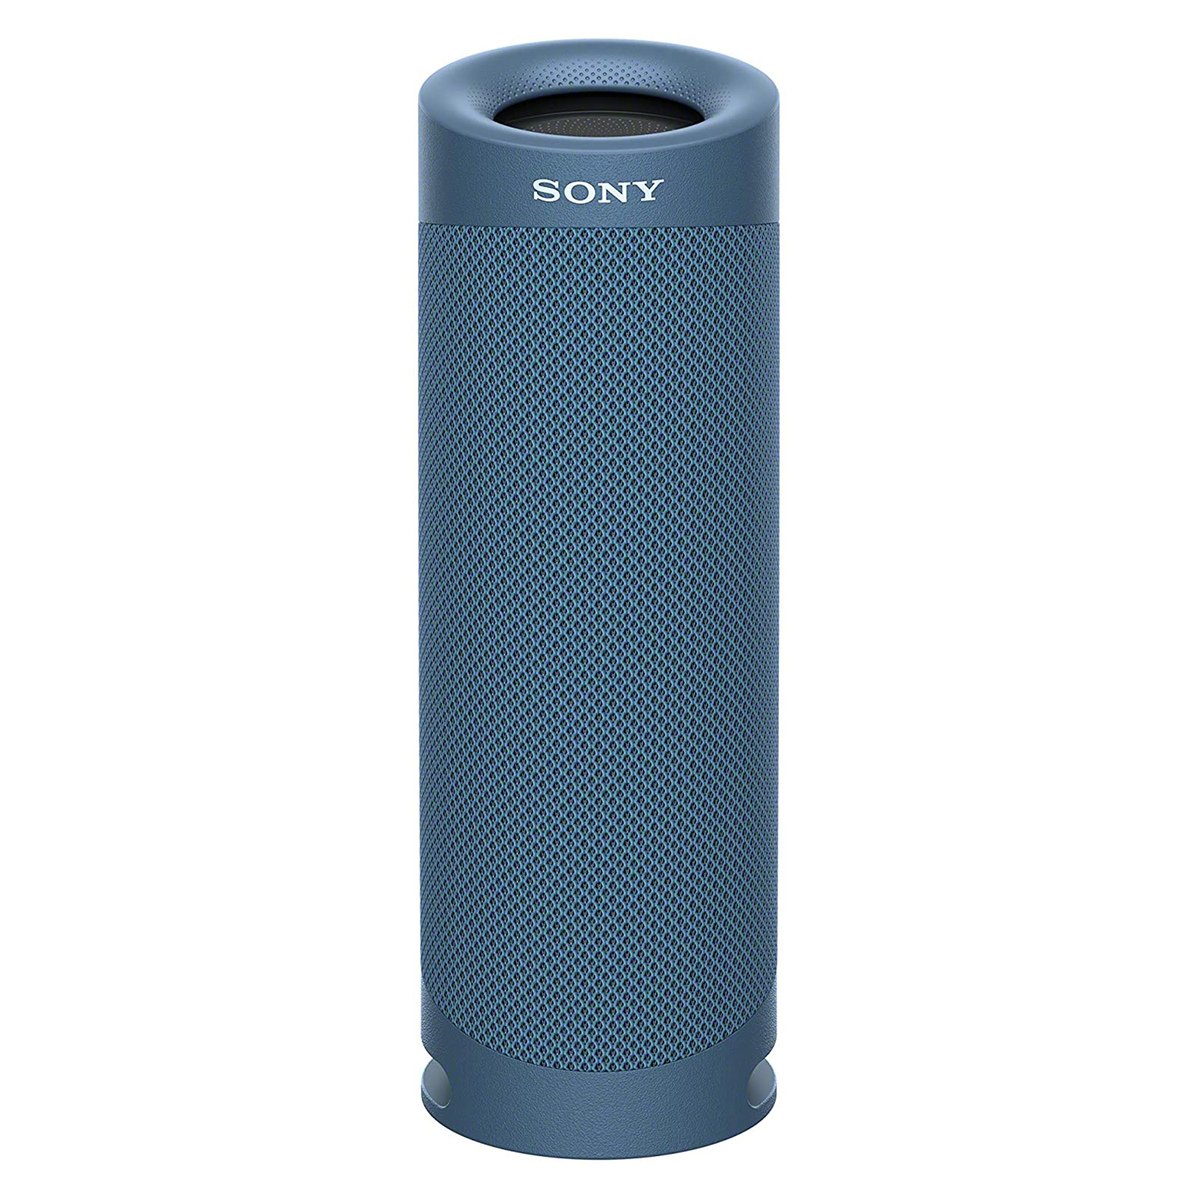 سوني SRS-XB23 مكبر صوت لاسلكي محمول IP67 ضد الماء مع ميكروفون مدمج للمكالمات الهوائية، أزرق فاتح